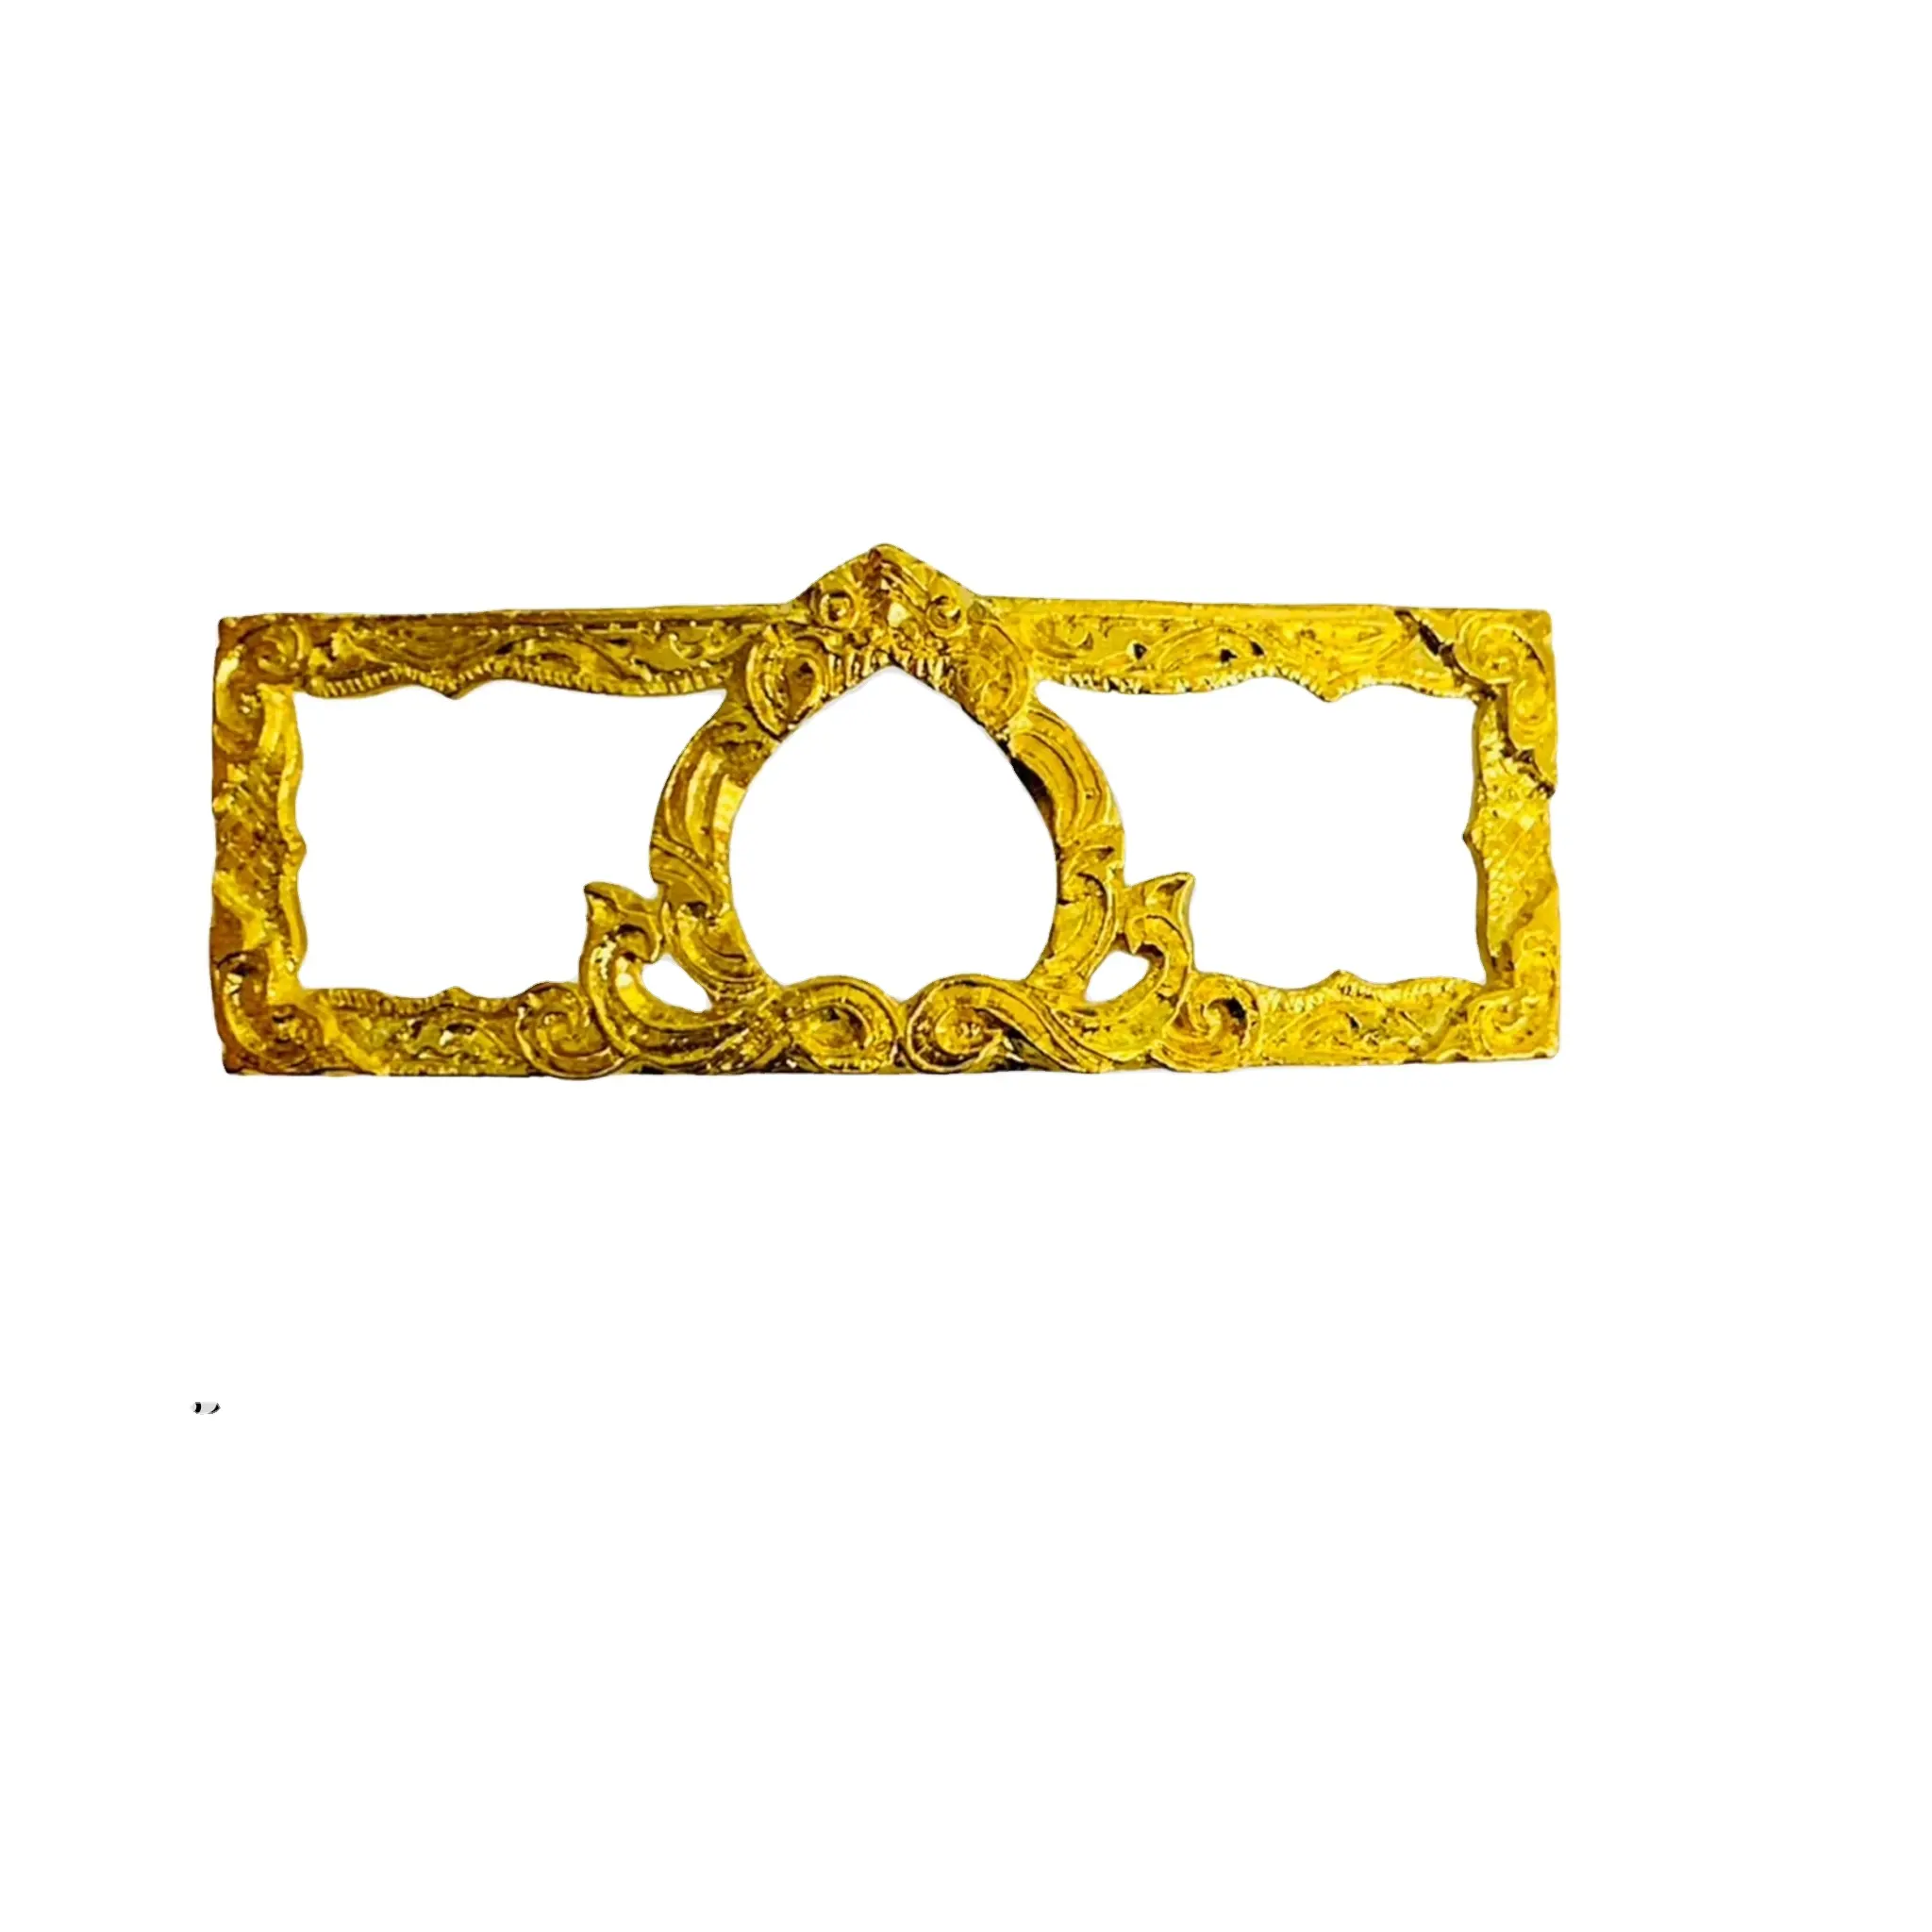 מארז זהב באיכות פרימיום של תאילנד מיקרון מסגרת זהב בסגנון מסגרת זהב עם צמיד נירוסטה, לואנג פלור